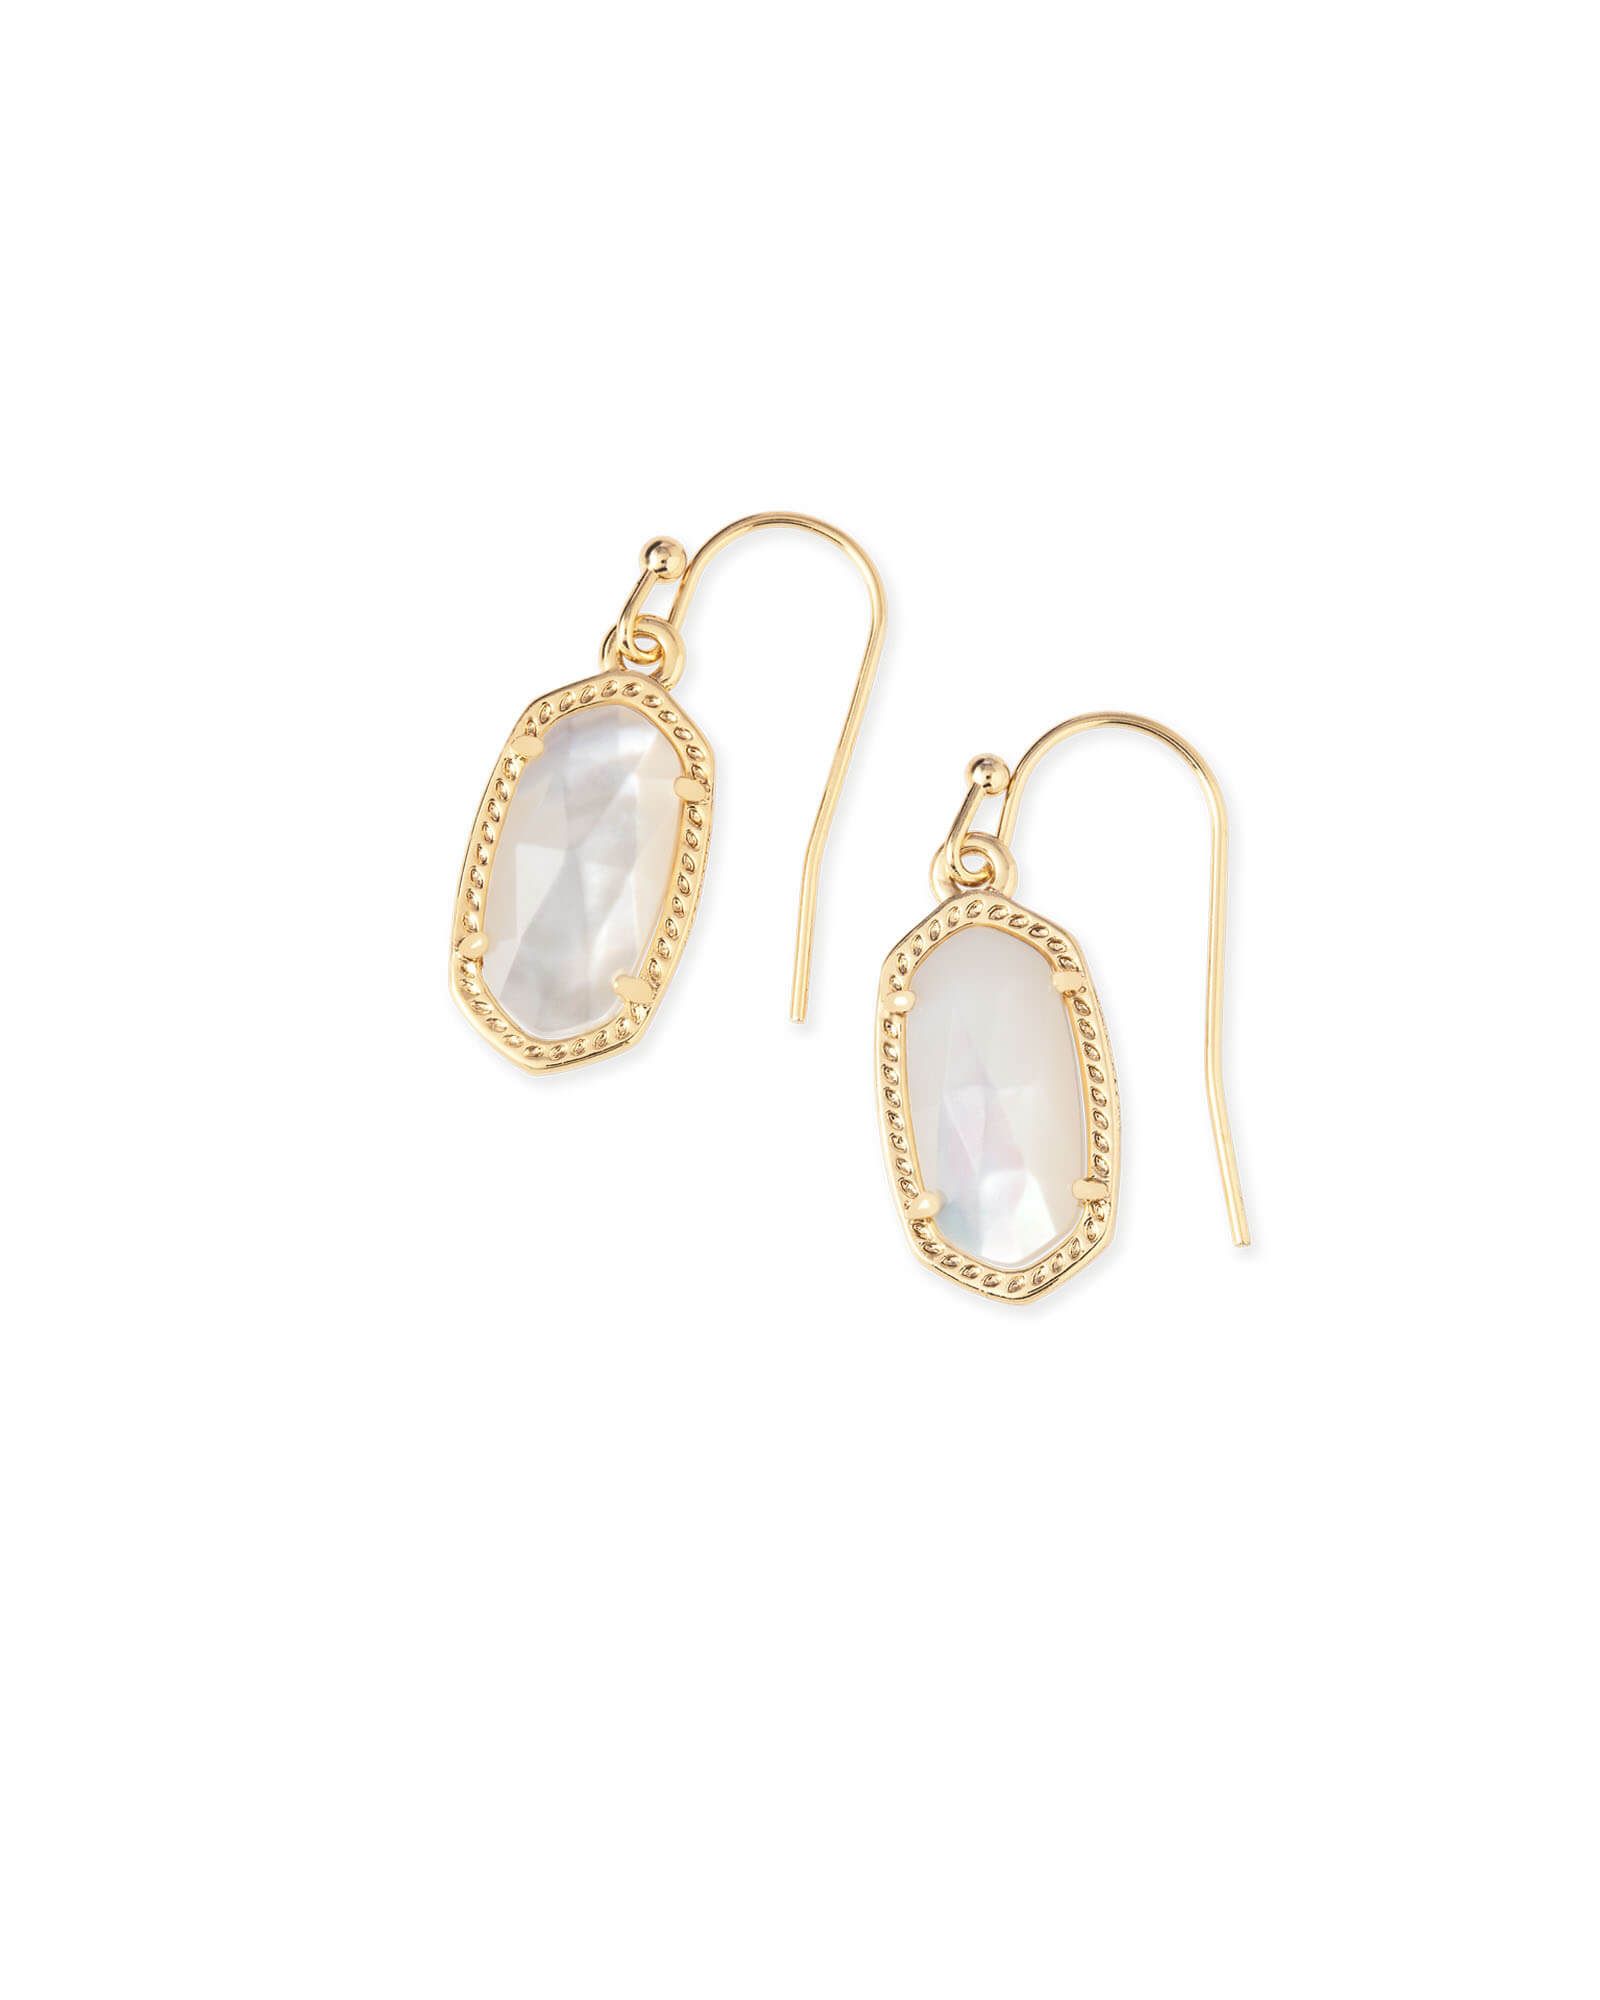 Lee Gold Drop Earrings in Ivory Mother-of-Pearl | Kendra Scott | Kendra Scott